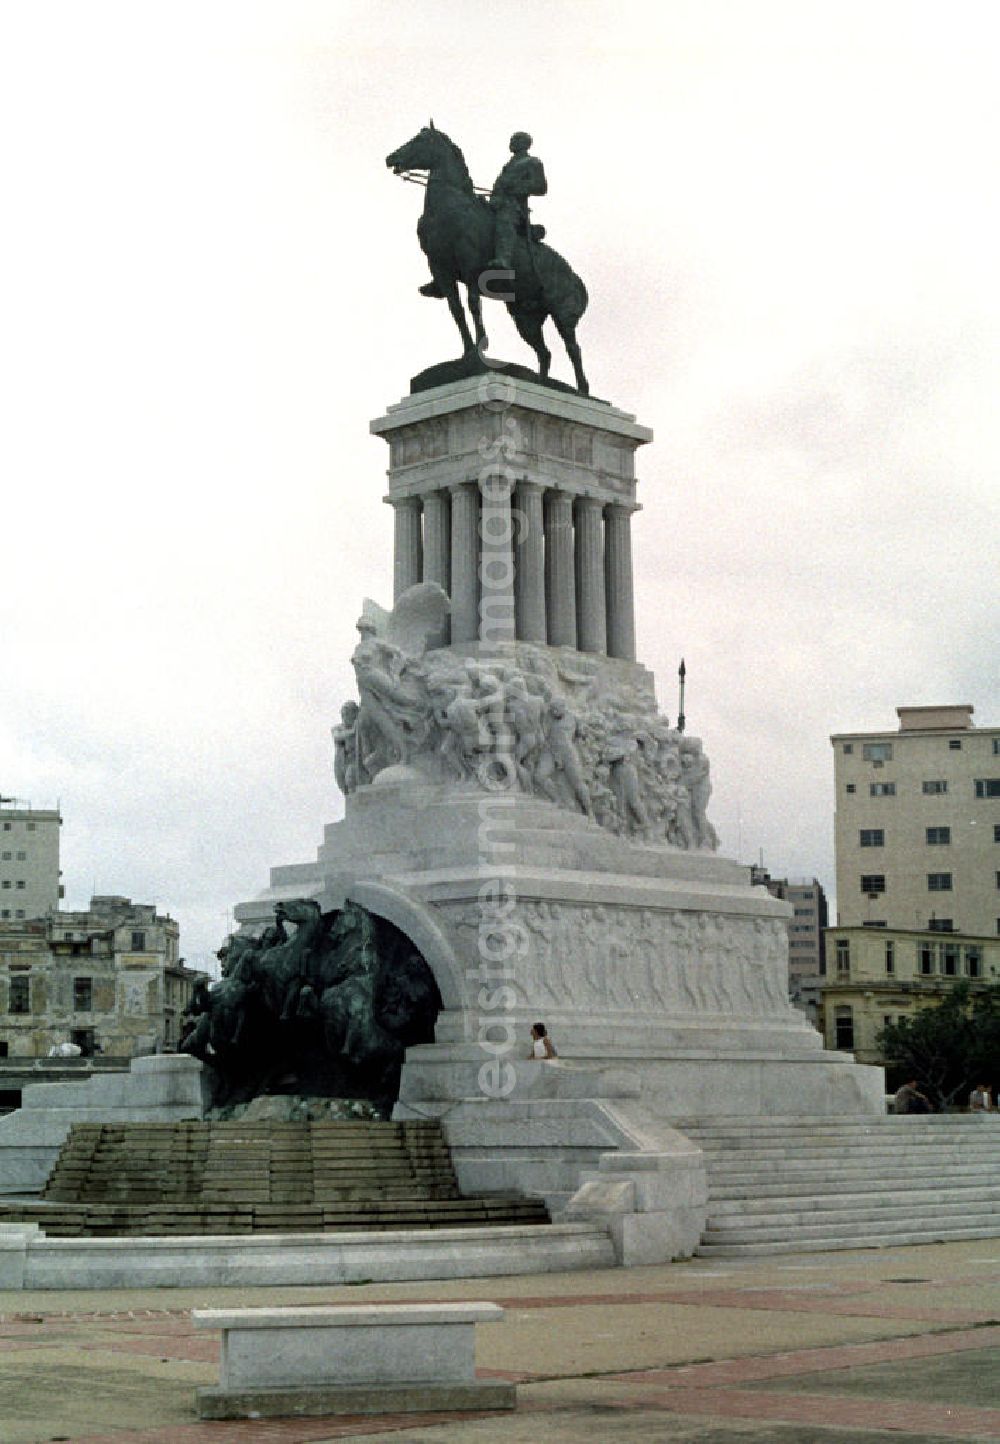 GDR photo archive: Havanna - Blick auf das Reiterdenkmal von José Marti am Plaza José Marti in Havanna. José Martí ist Symbolfigur des Unabhängigkeitskampfes Kubas gegen Spanien und wird in Kuba als Volksheld verehrt.